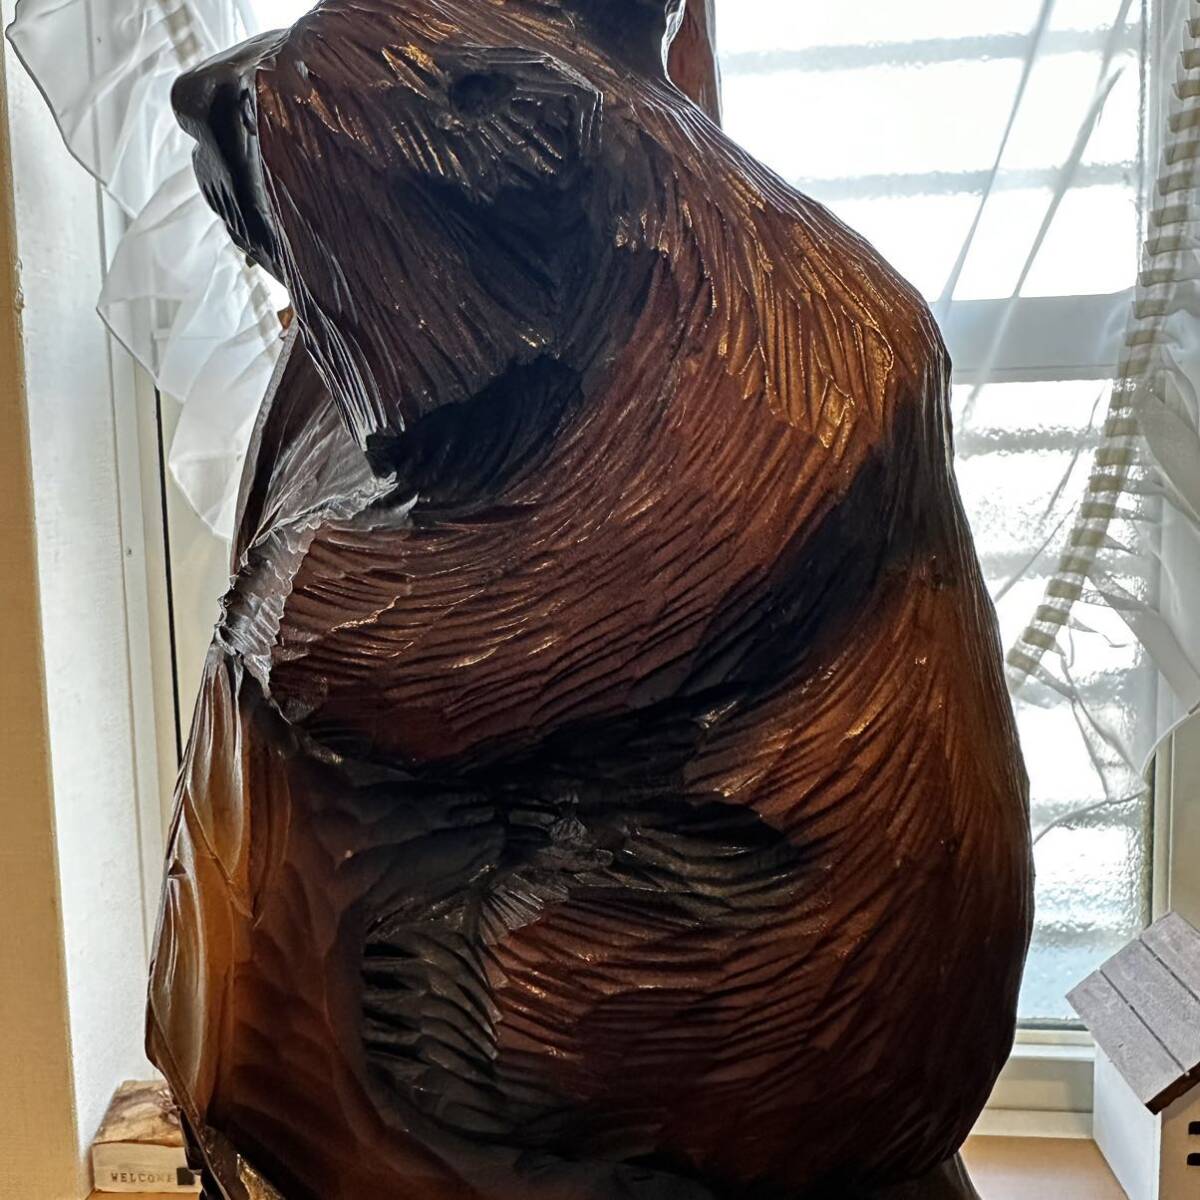 熊 木彫り 最大高さ73cm 1本木 熊3匹 親子 木彫 民芸品 伝統工芸品 インテリア アート置物 _画像6